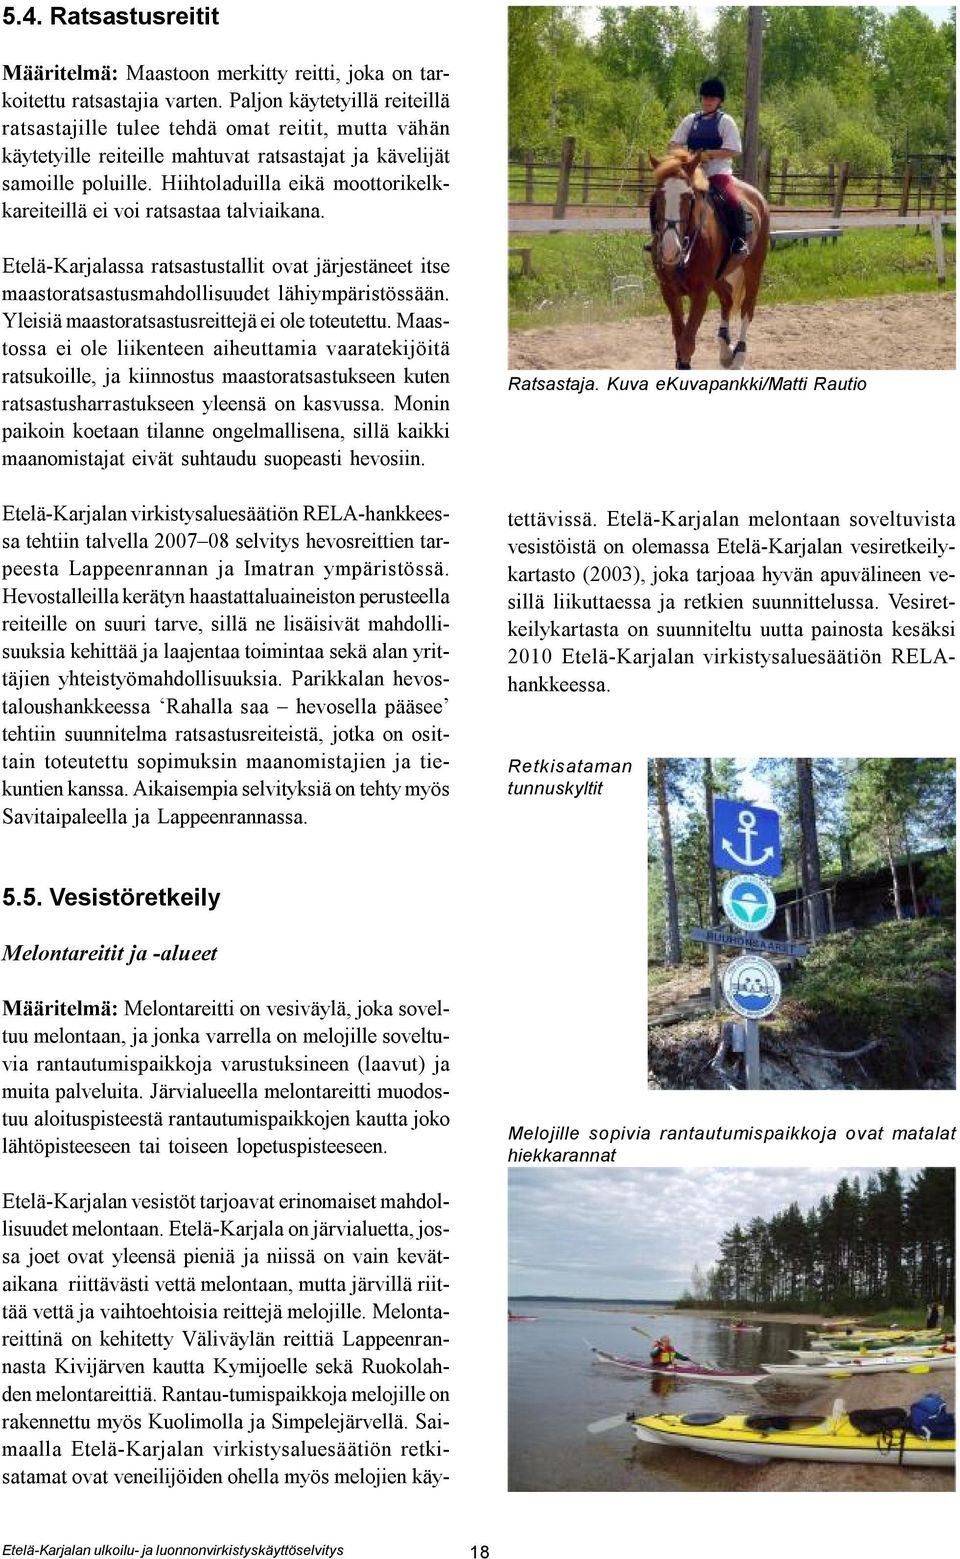 Hiihtoladuilla eikä moottorikelkkareiteillä ei voi ratsastaa talviaikana. Etelä-Karjalassa ratsastustallit ovat järjestäneet itse maastoratsastusmahdollisuudet lähiympäristössään.